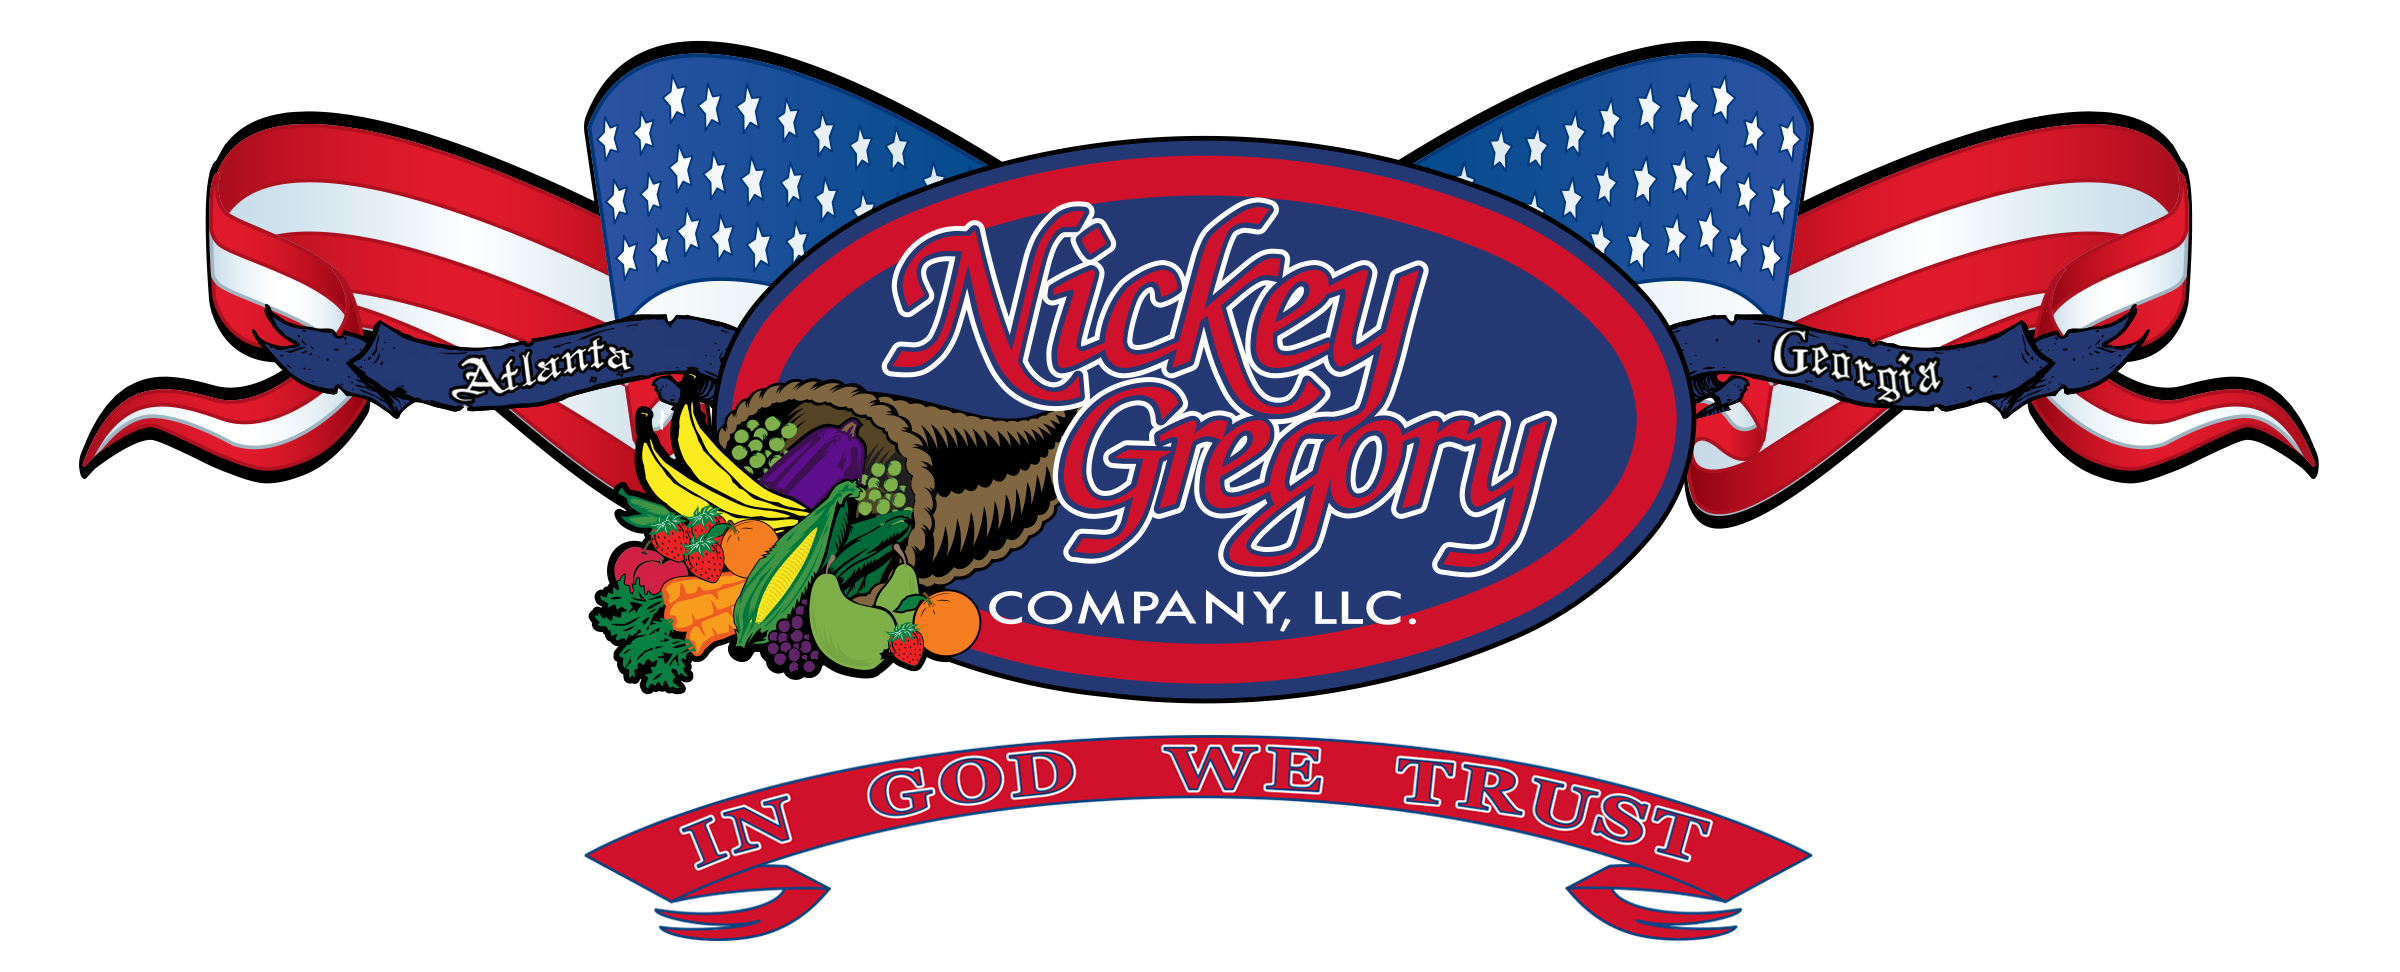 Nickey Gregory Company logo